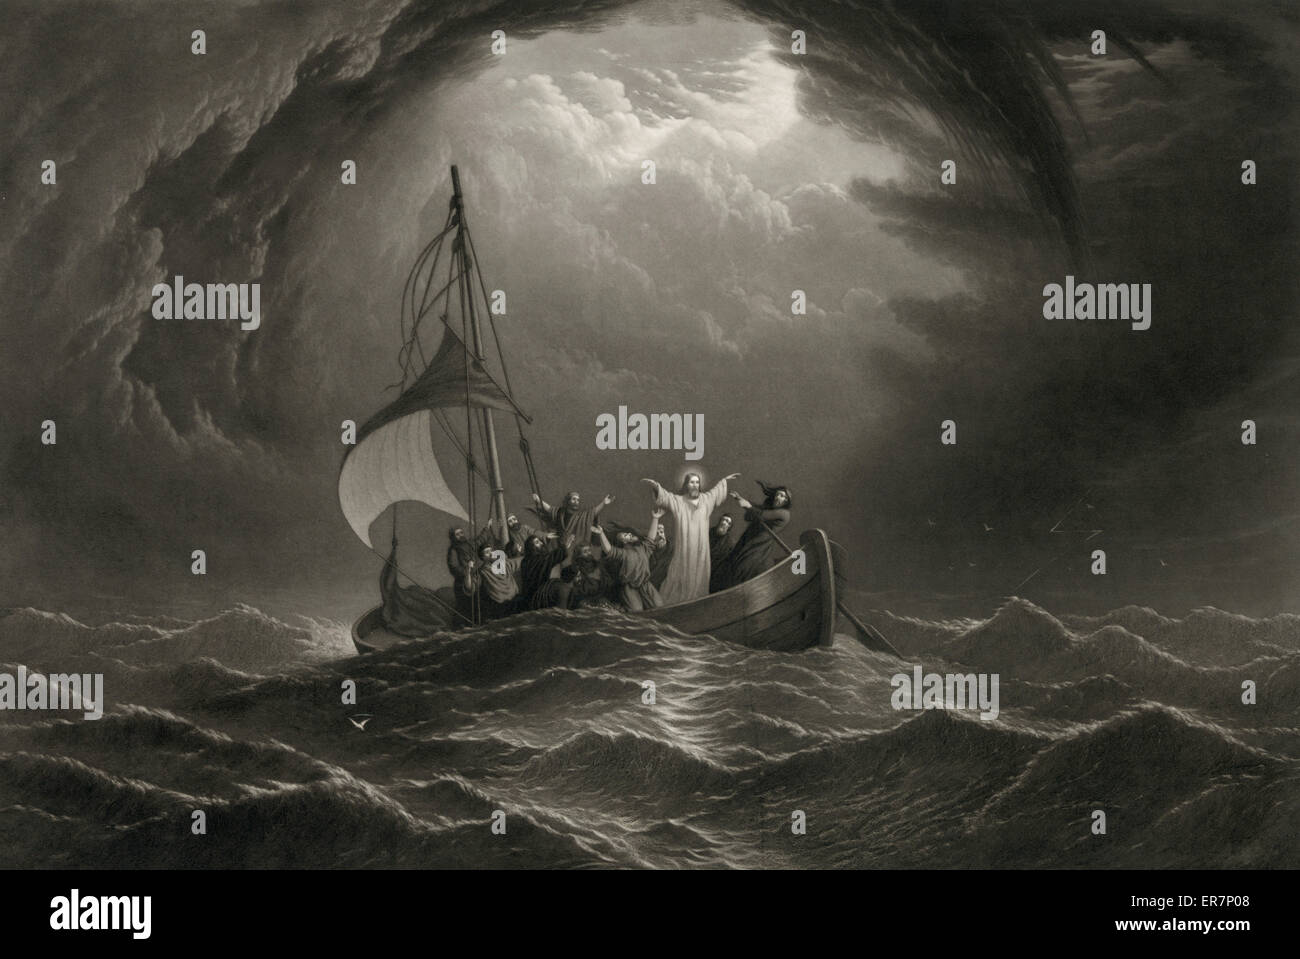 Christus, die Stillung des Sturms. Drucken, zeigt Jesus in einem Boot mit den Aposteln auf stürmischer See stehen. Datum c1867. Christus, die Stillung des Sturms. Drucken, zeigt Jesus in einem Boot mit den Aposteln auf stürmischer See stehen. Datum c1867. Stockfoto